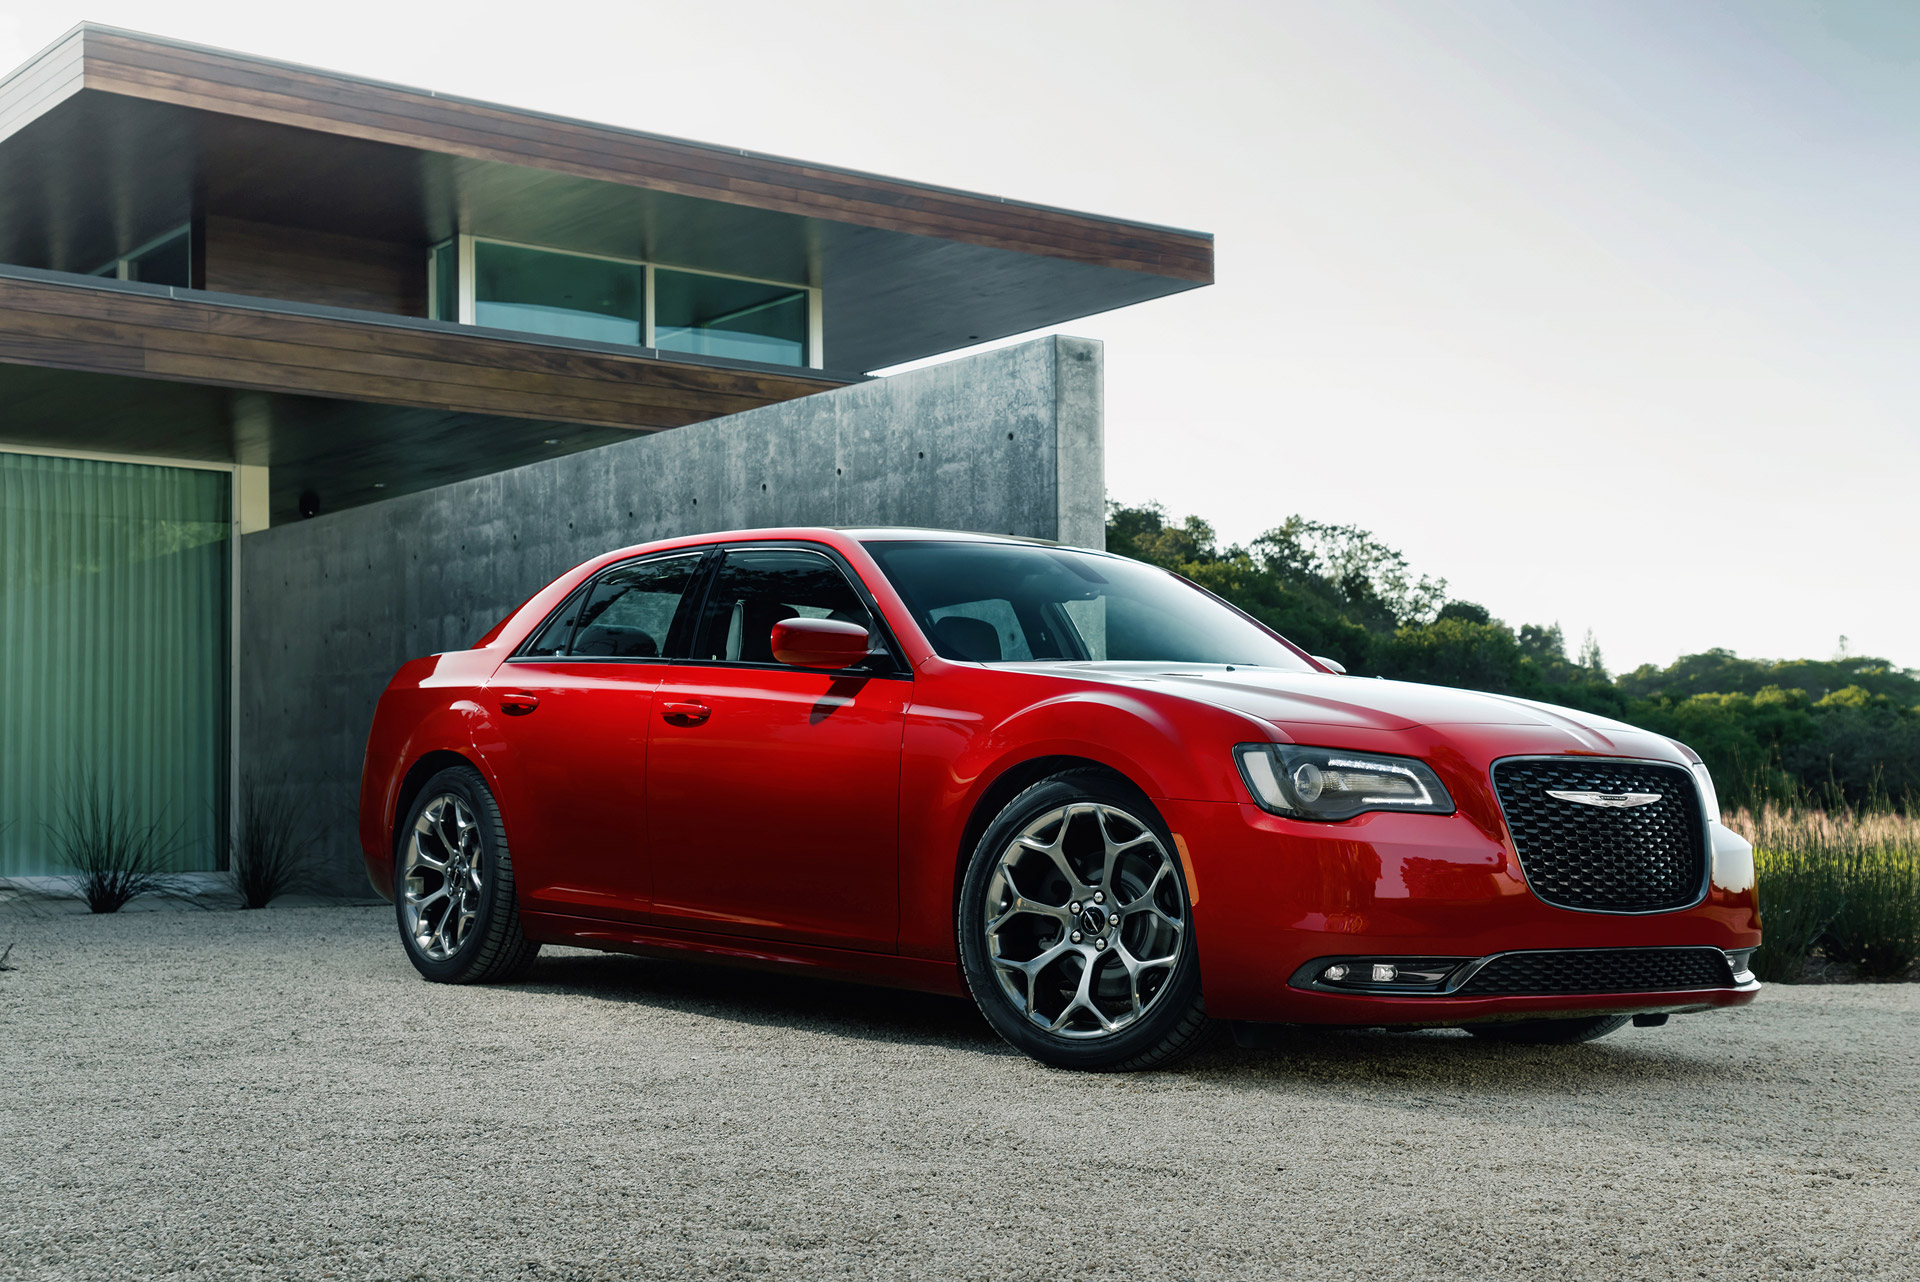 2016 Chrysler 300 Review & Ratings